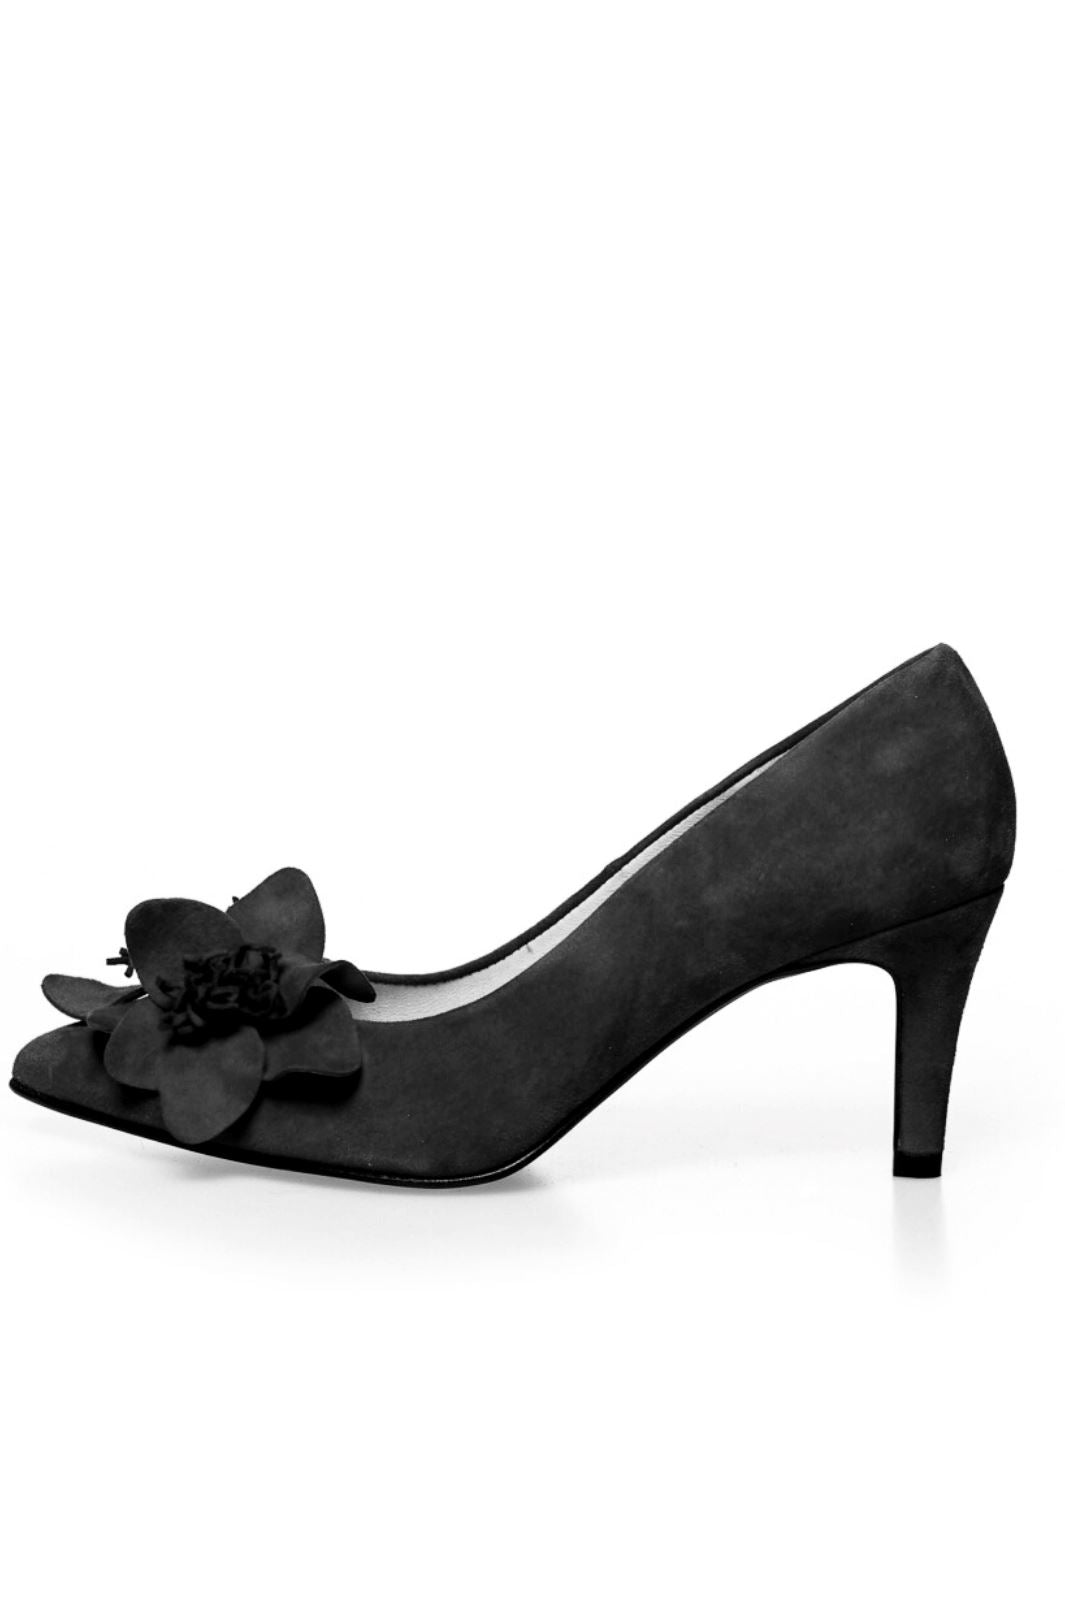 Copenhagen Shoes - Flower - 0001 Black Stiletter 